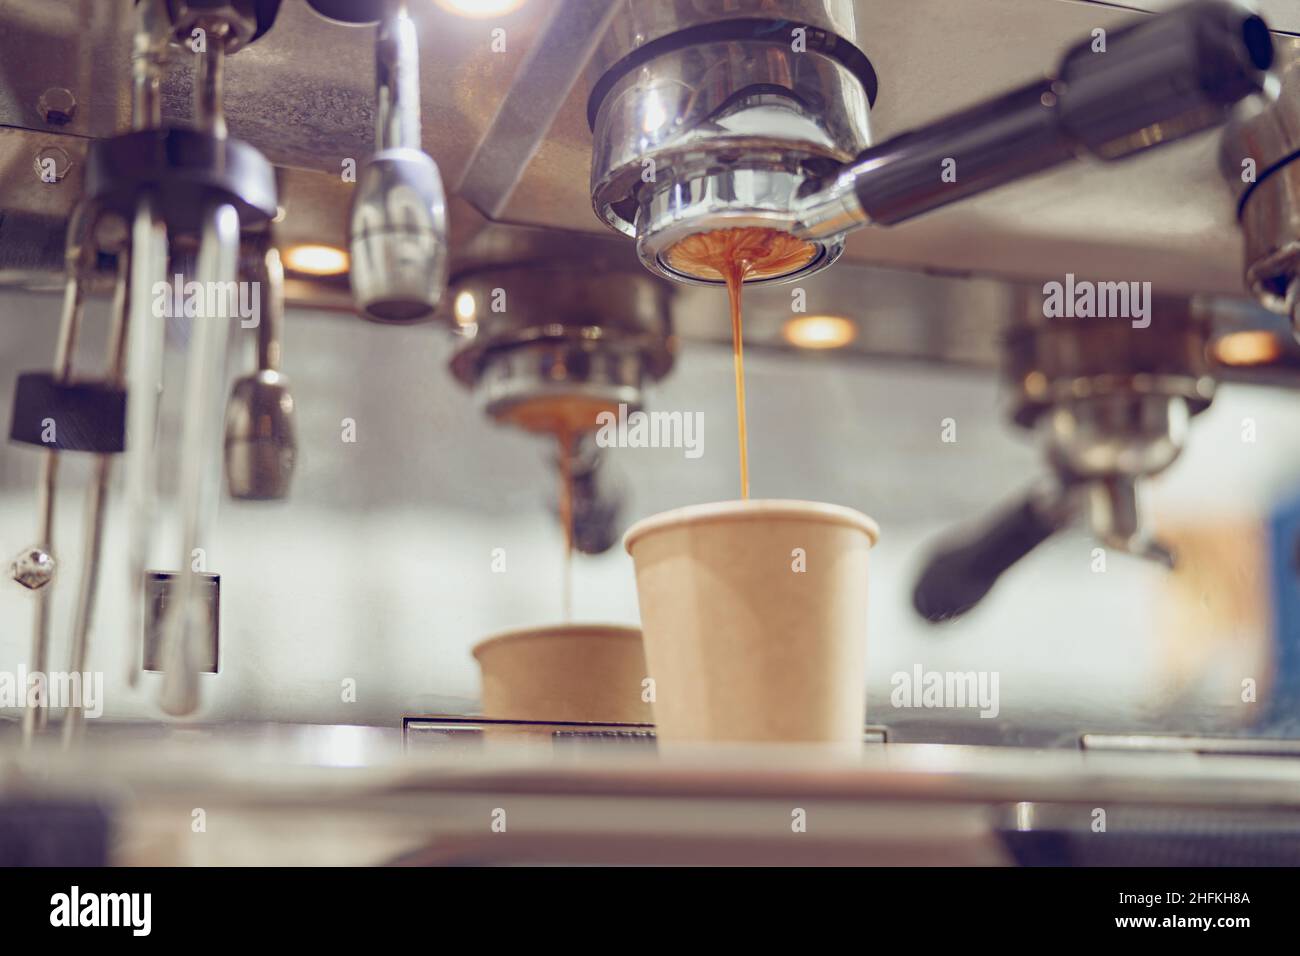 https://c8.alamy.com/compes/2hfkh8a/primer-plano-de-una-cafetera-espresso-comercial-o-industrial-con-taza-de-papel-y-portafiltro-2hfkh8a.jpg